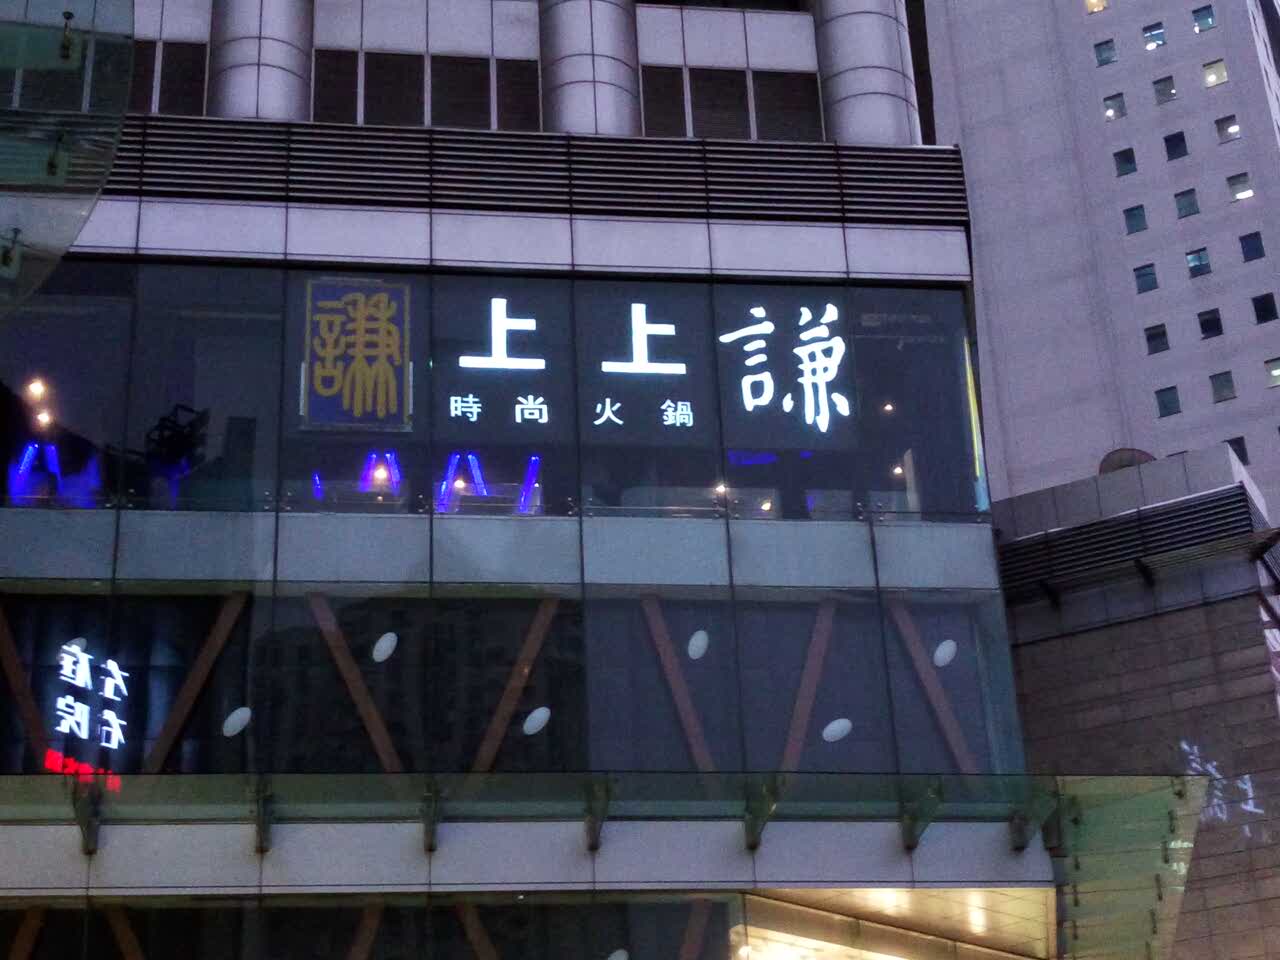 上上谦火锅(新梅联合广场店)